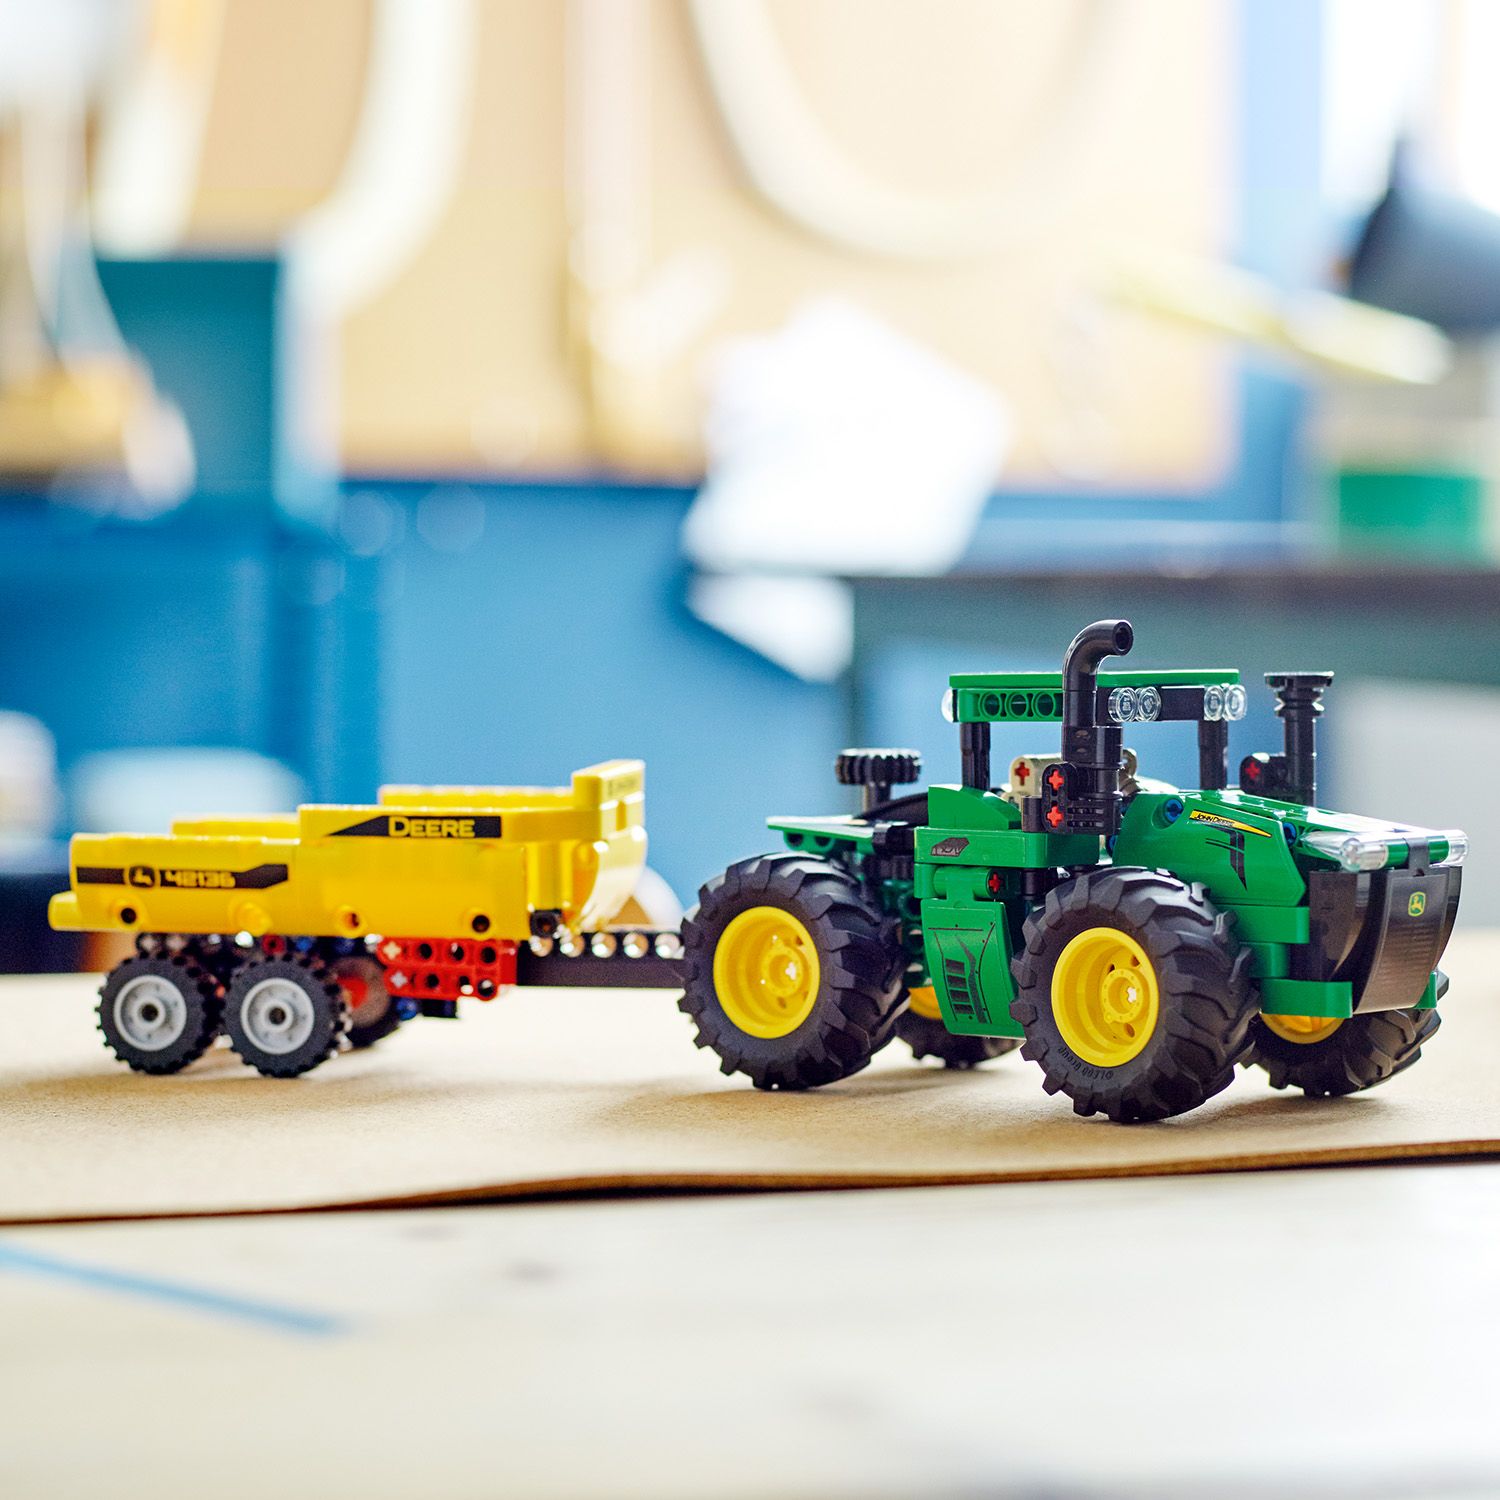 Darček pre deti, ktoré zbožňujú traktory